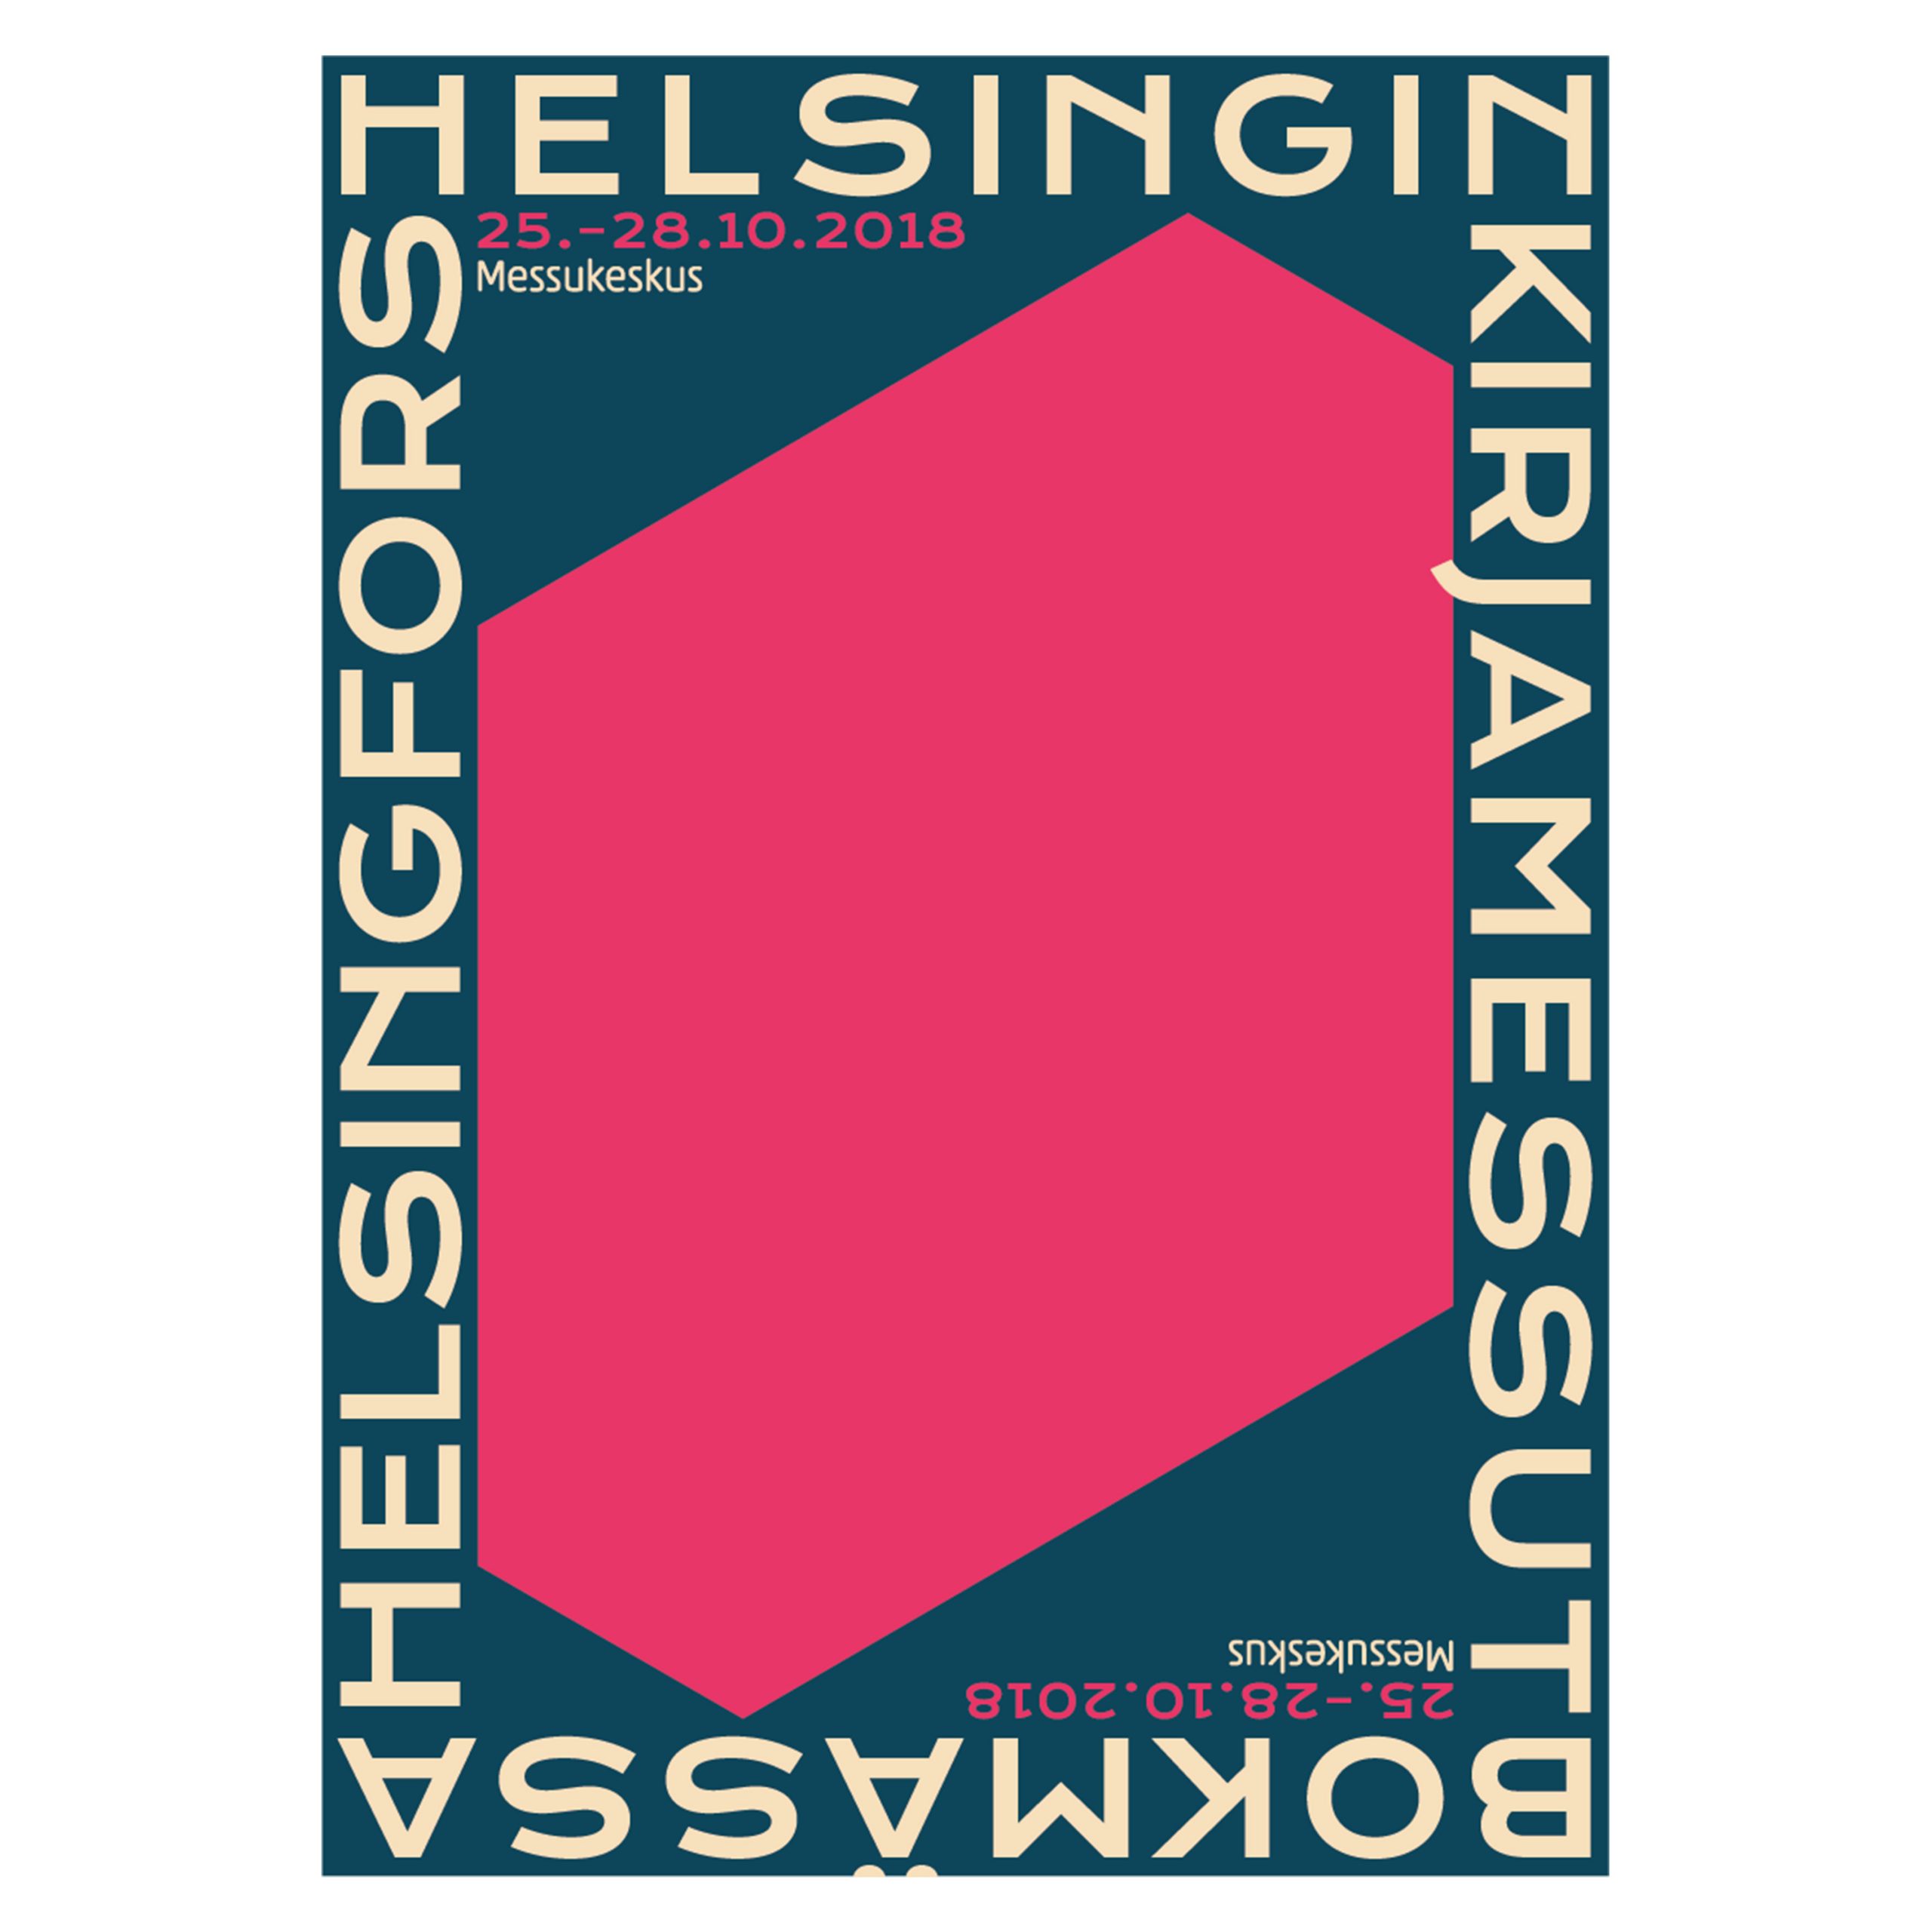 Helsingin Kirjamessut 2018 poster